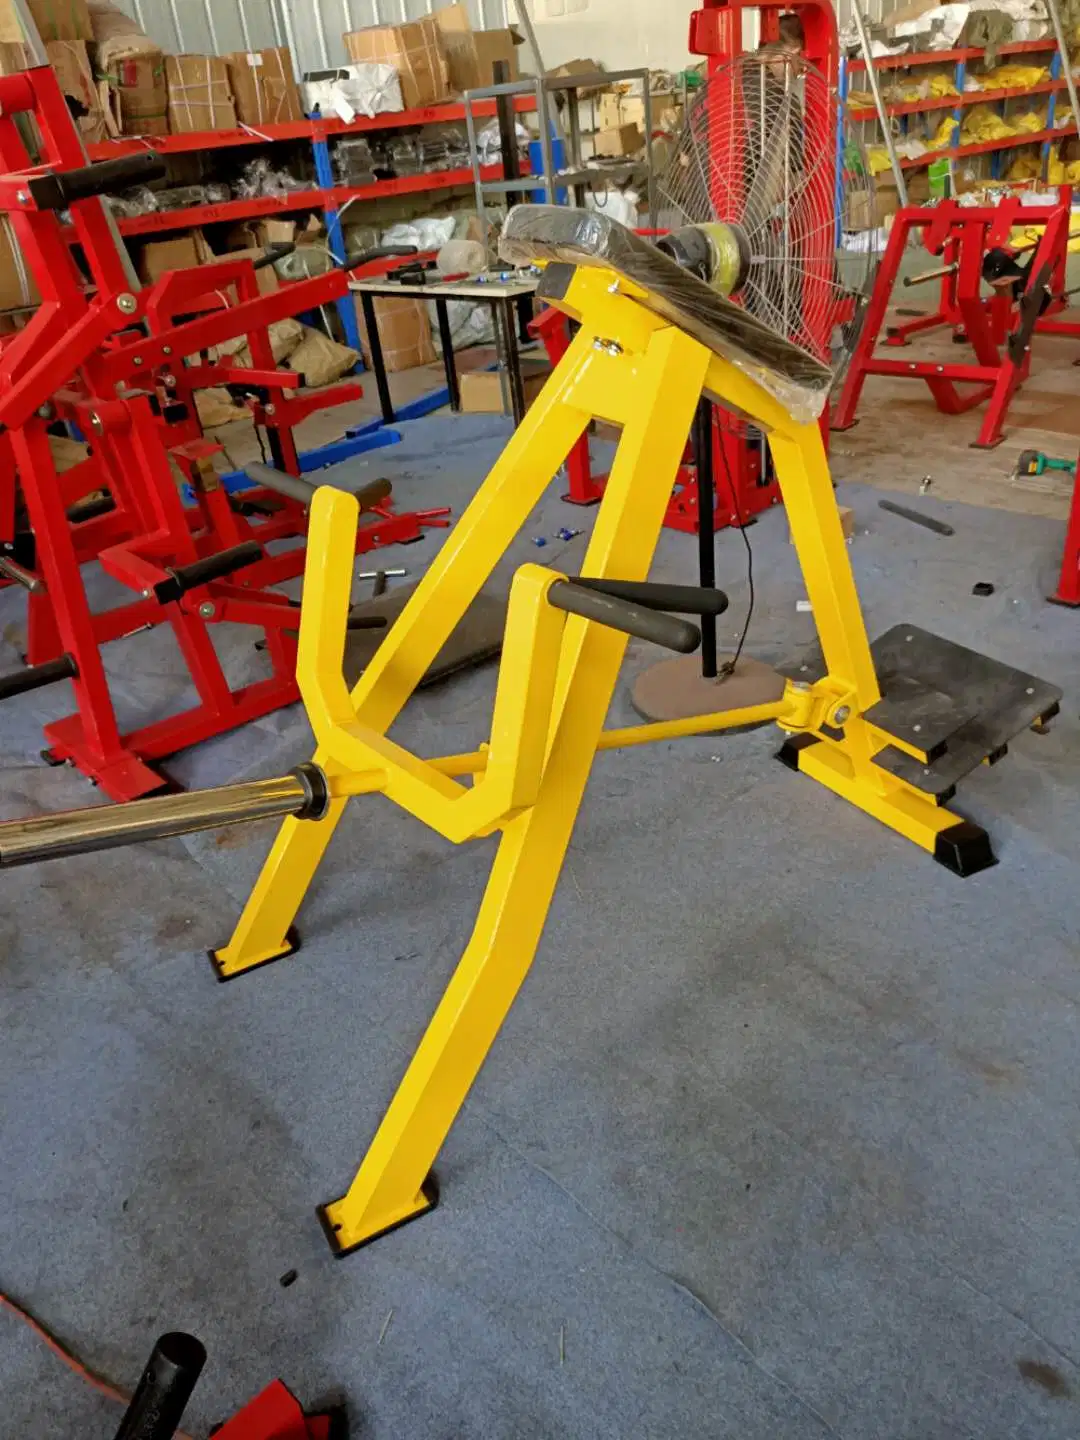 Home Máquina de intensidade de exercício profissional T Bar Row / Inclinação Remador ginásio comercial equipamento de fitness